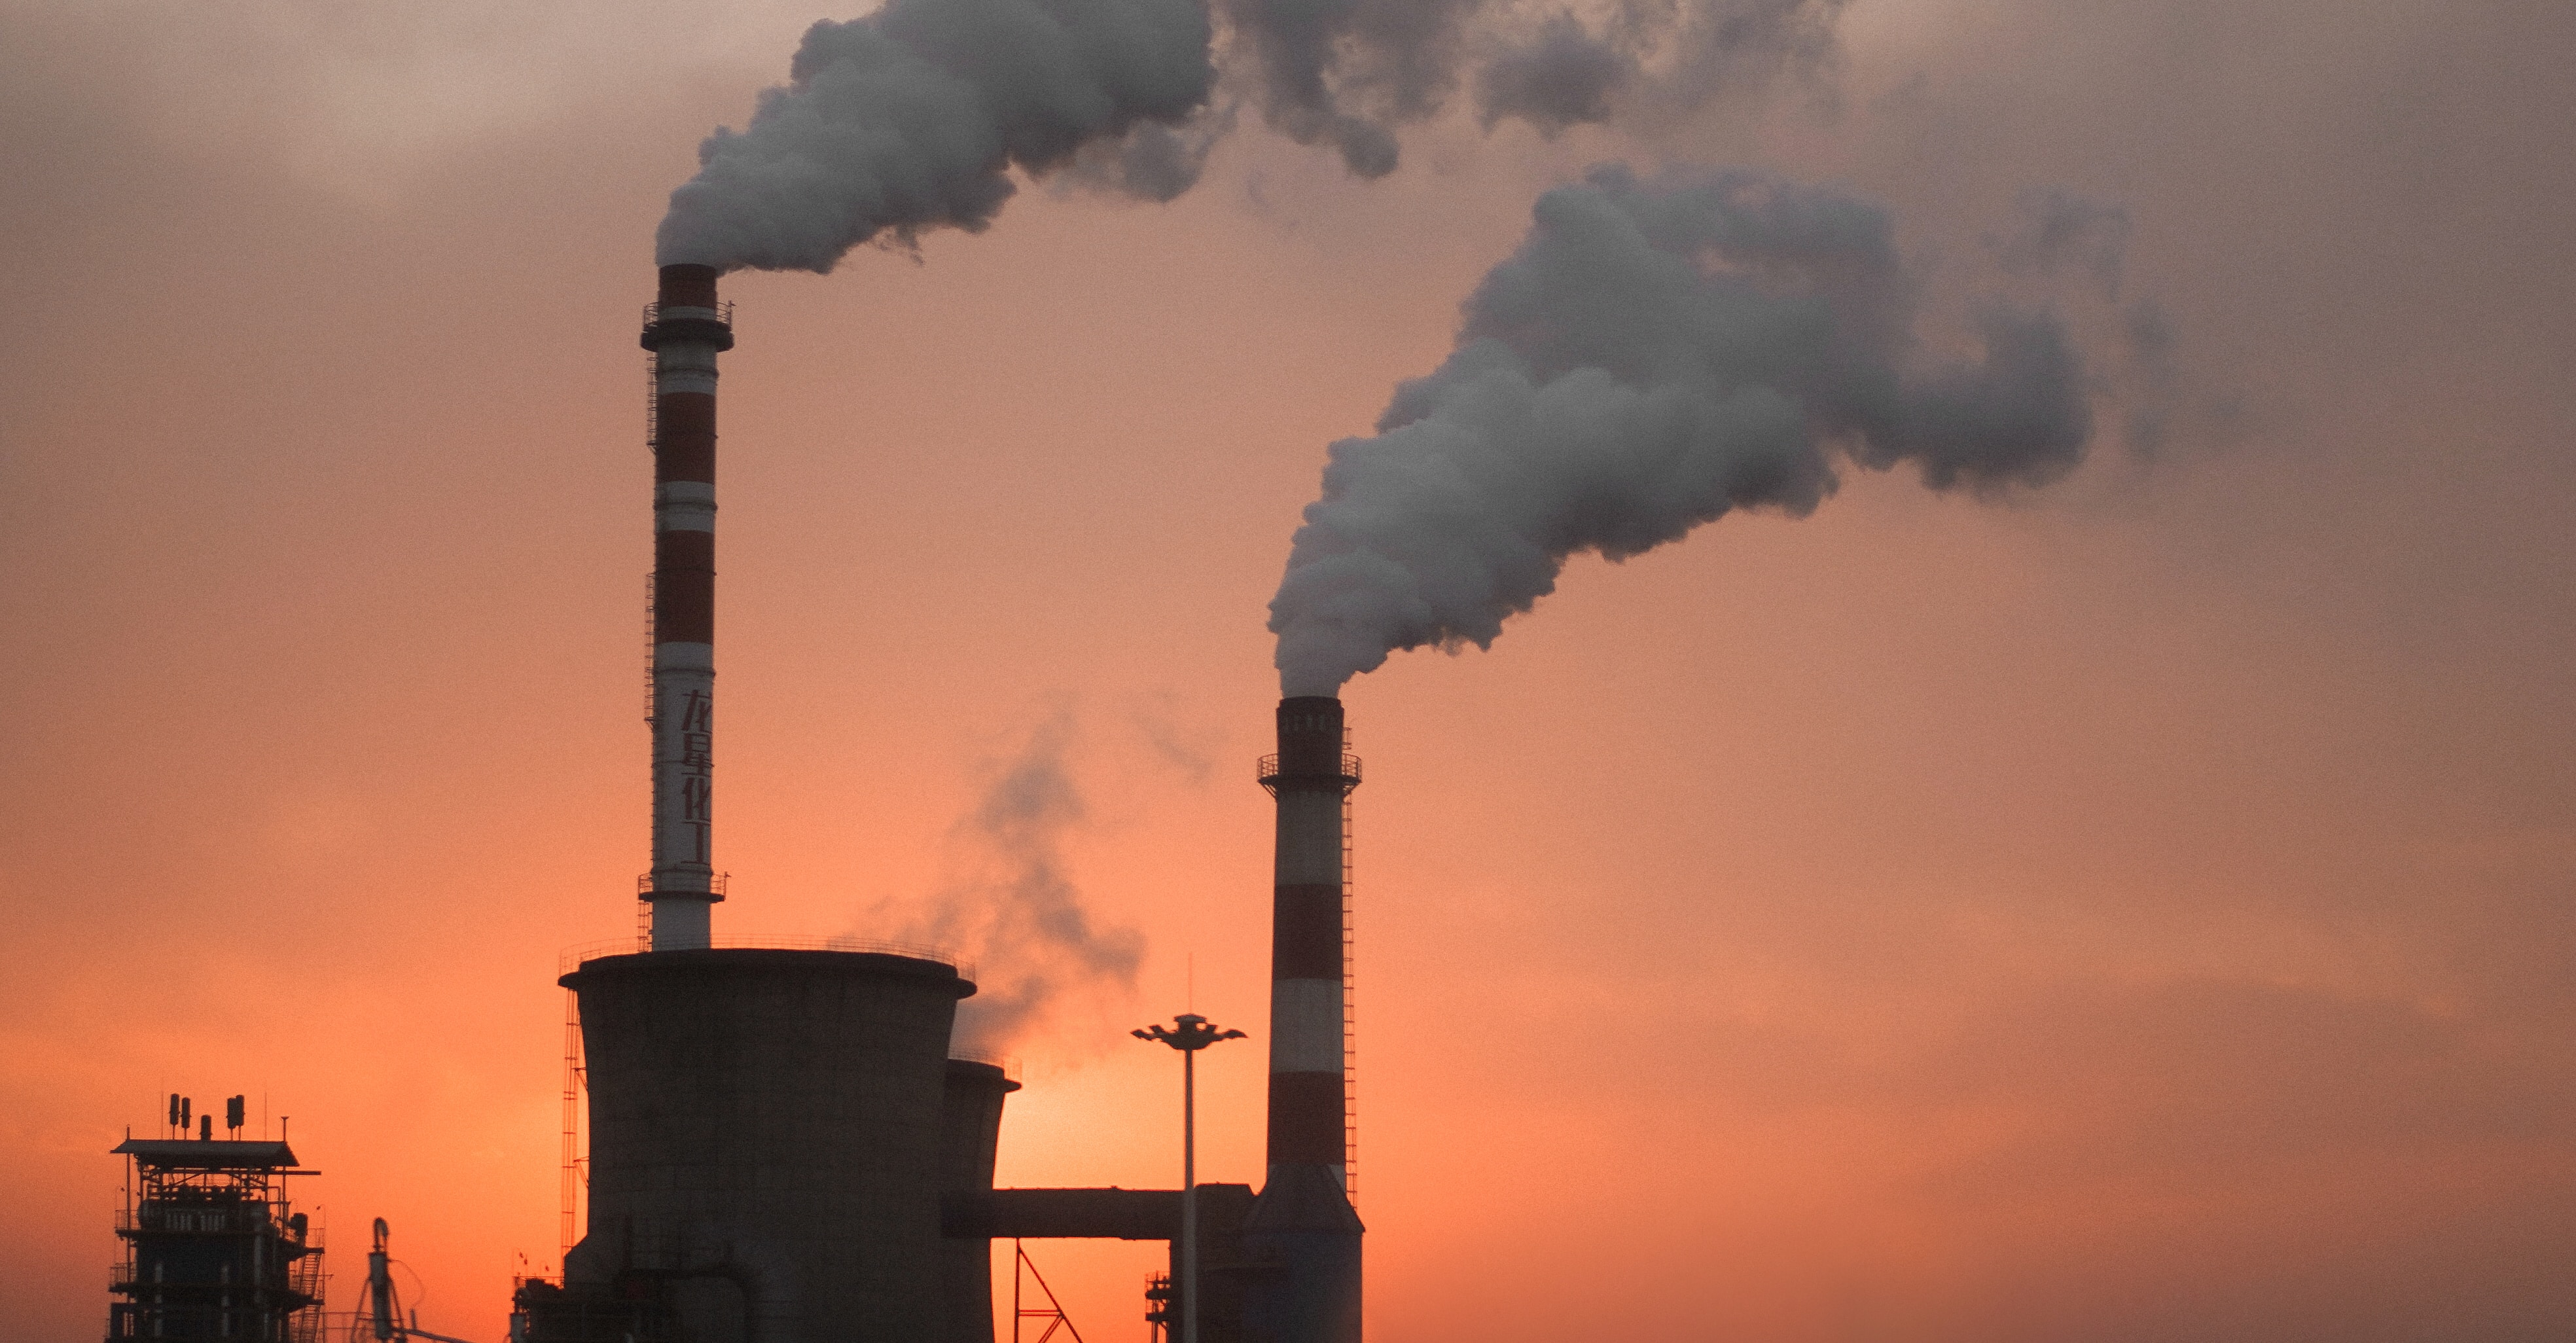 La contaminació atmosfèrica és un dels compromisos que aborda el Pla nacional per a l'Agenda 2030